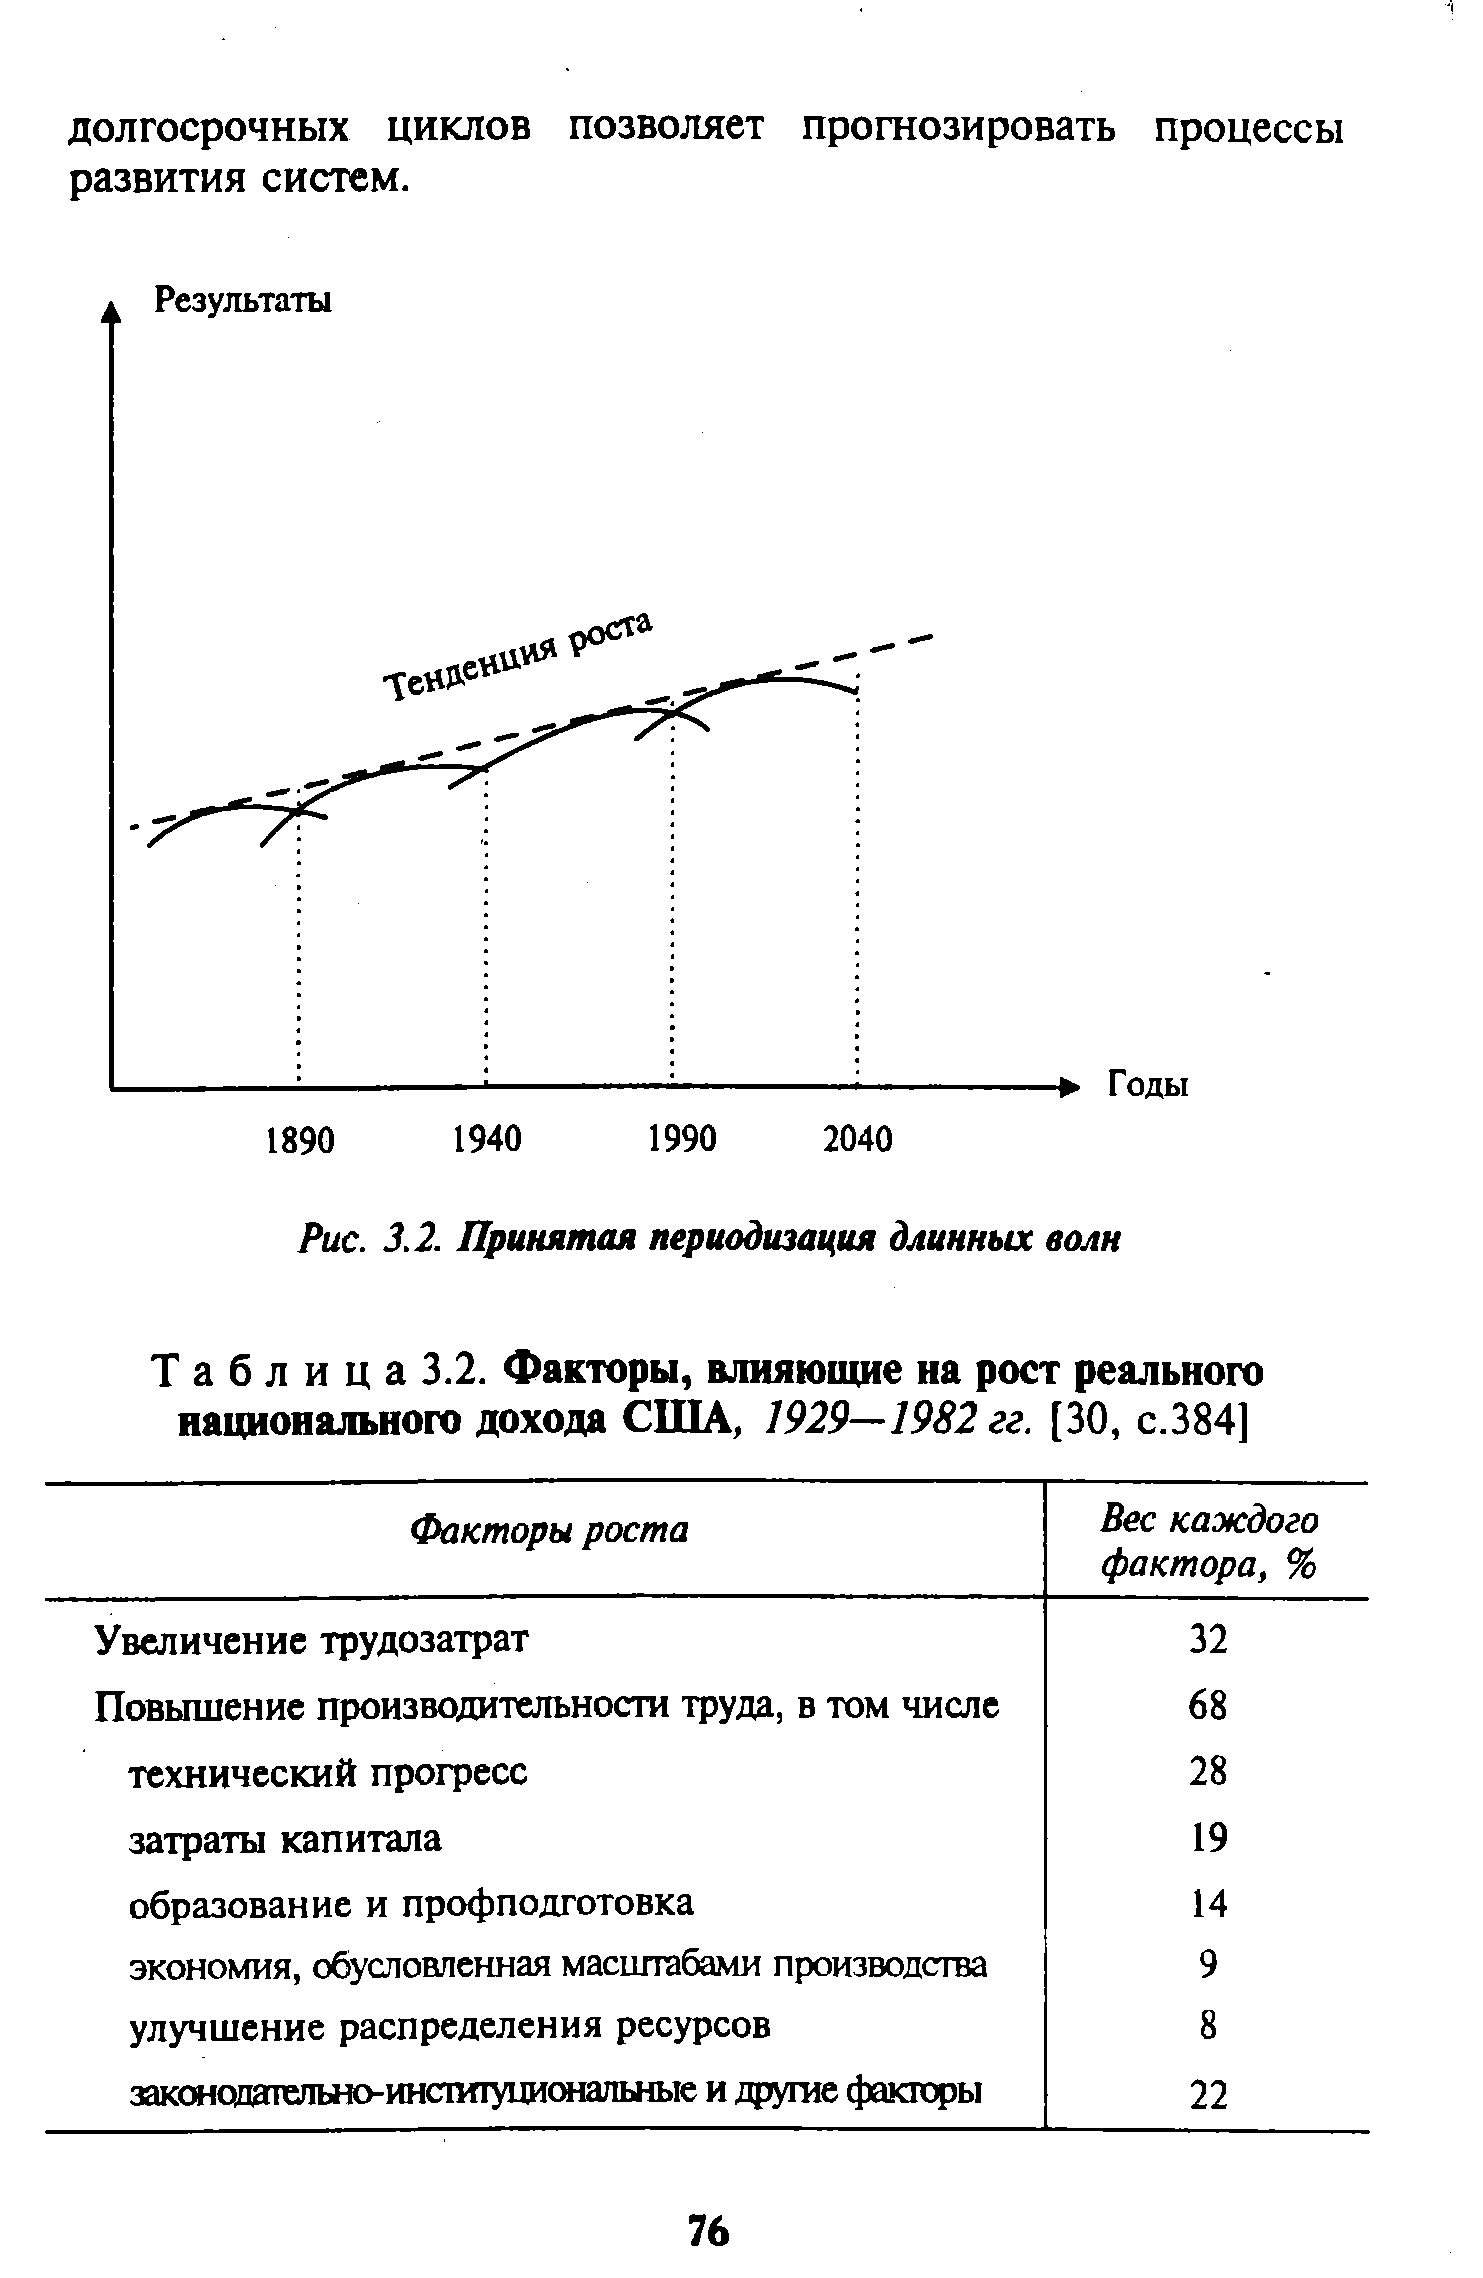 Таблица 3.2. Факторы, влияющие на рост реального национального дохода США, 1929—1982 гг. [30, с.384]
